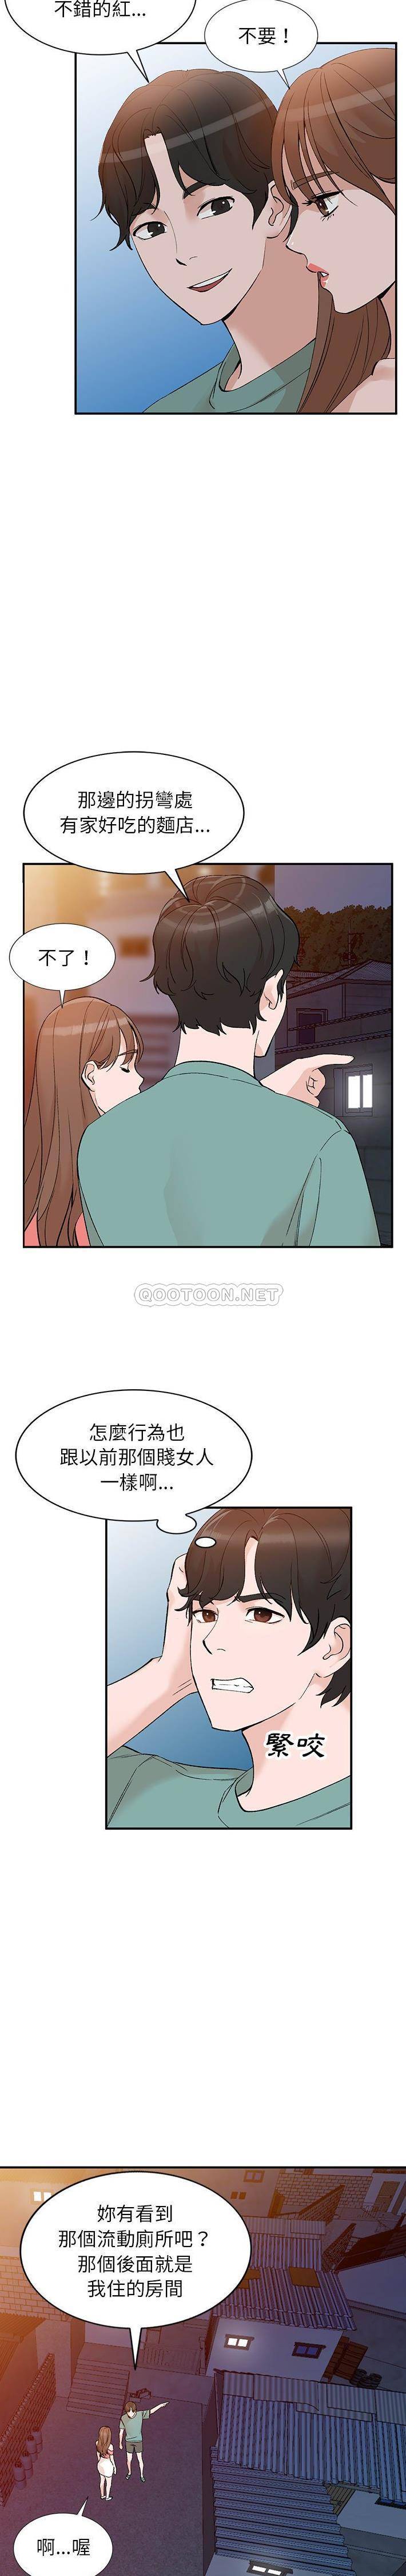 韩国污漫画 她們的小秘密(小鎮上的女人們) 第14话 13